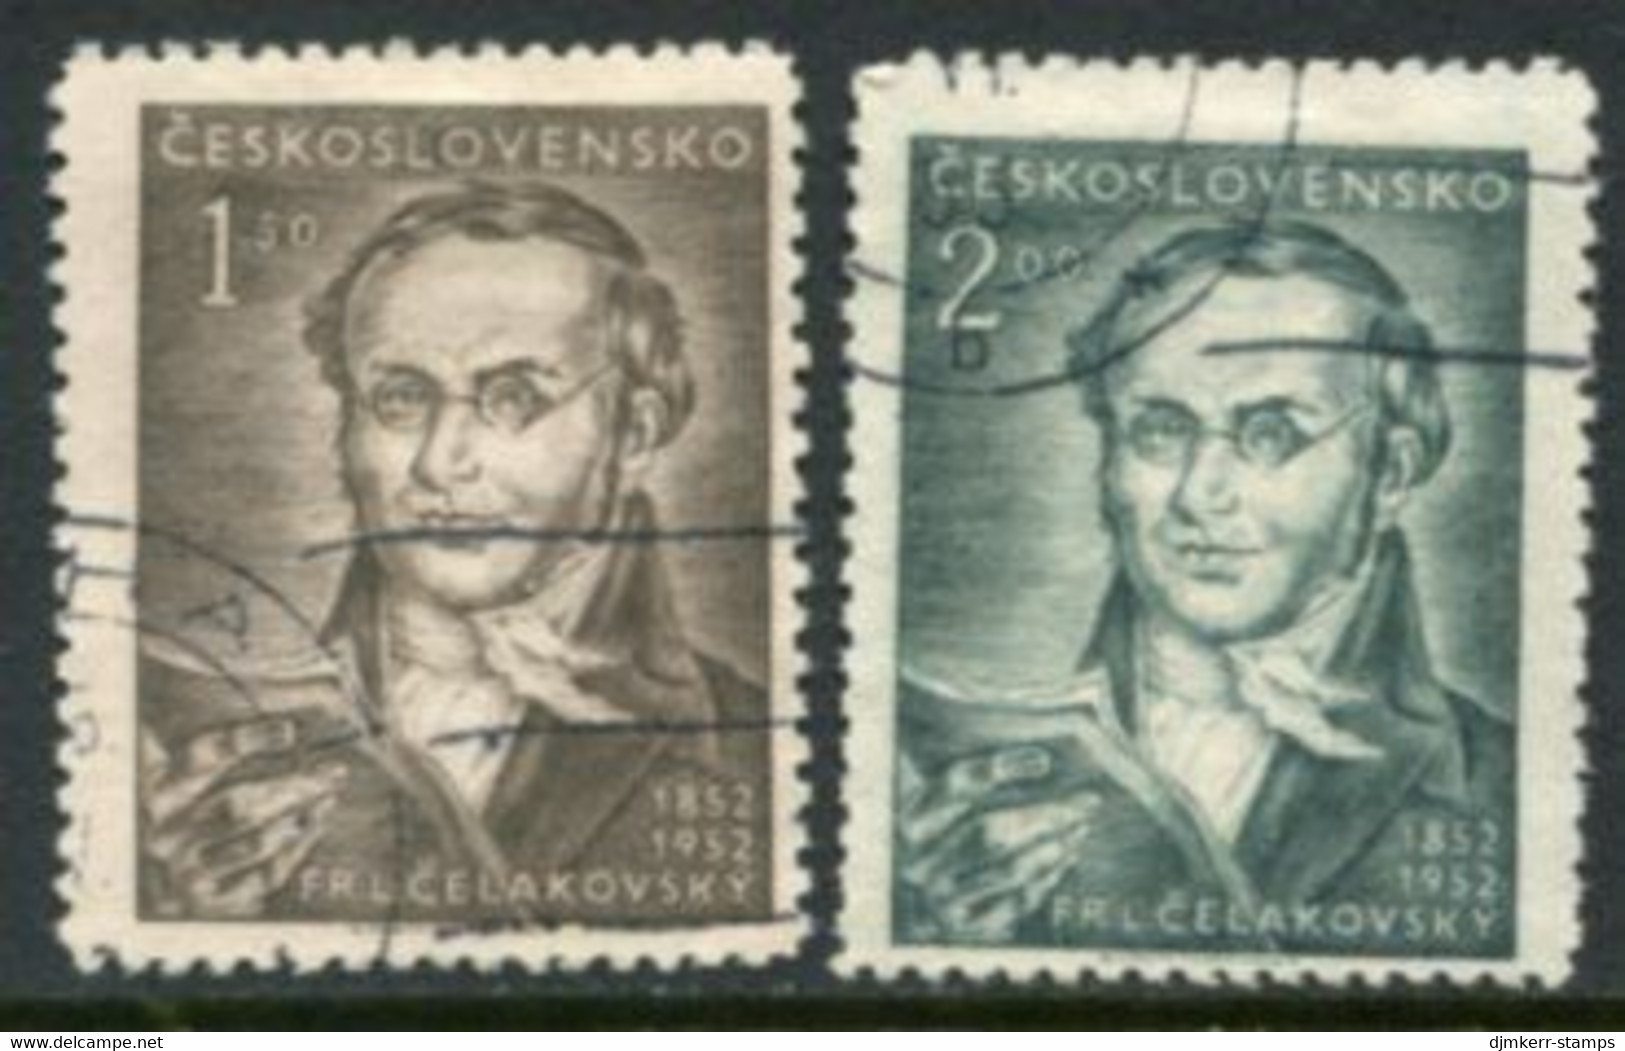 CZECHOSLOVAKIA 1952 Celakovsky Centenary Used.  Michel 753-54 - Used Stamps